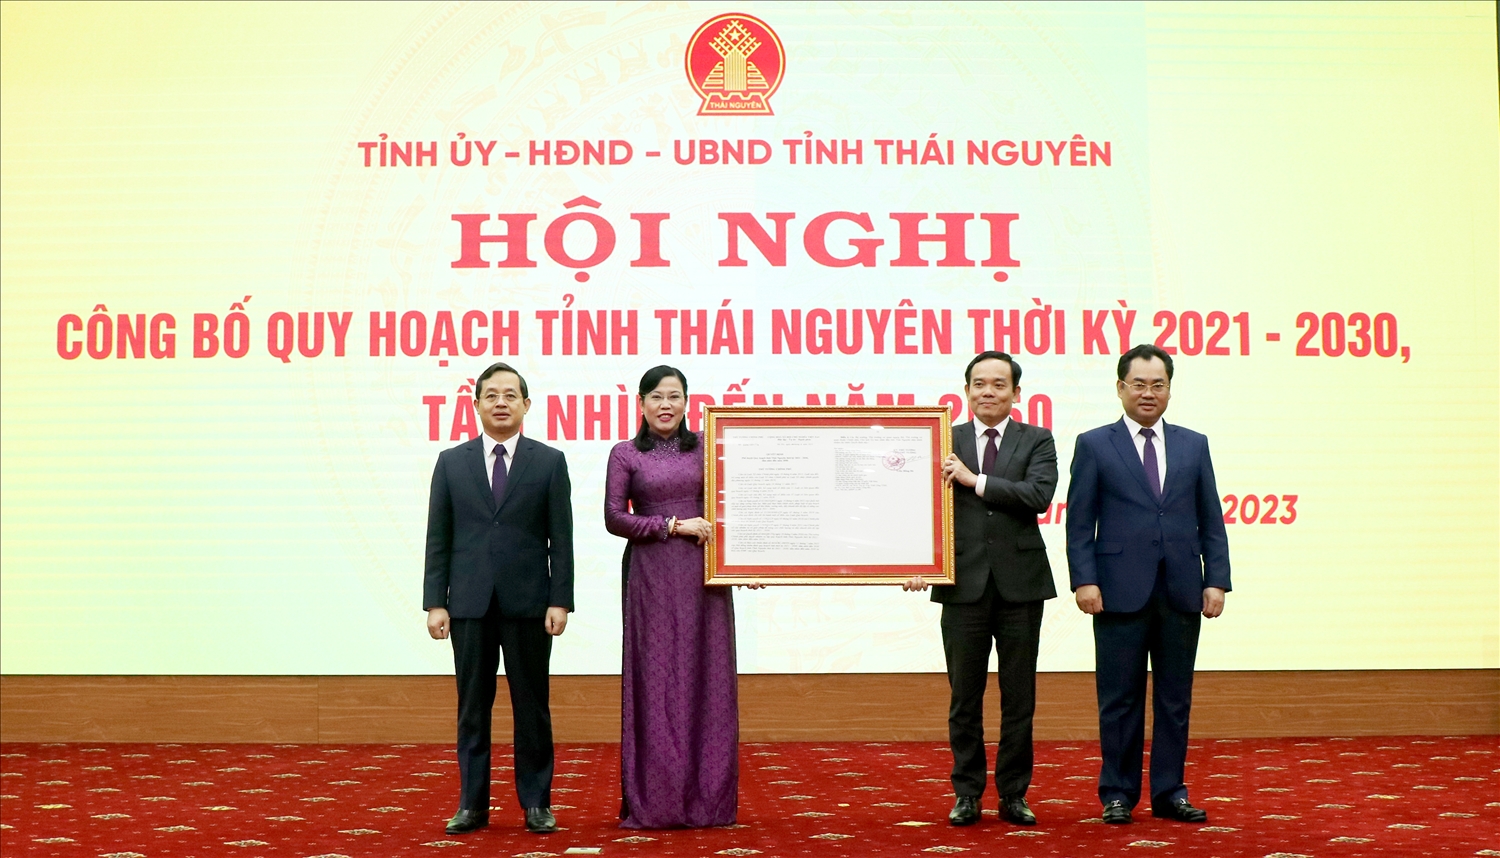 Phó Thủ tướng Chính phủ Trần Lưu Quang trao Quyết định về việc phê duyệt Quy hoạch tỉnh Thái Nguyên thời kỳ 2021 - 2030 cho lãnh đạo tỉnh Thái Nguyên